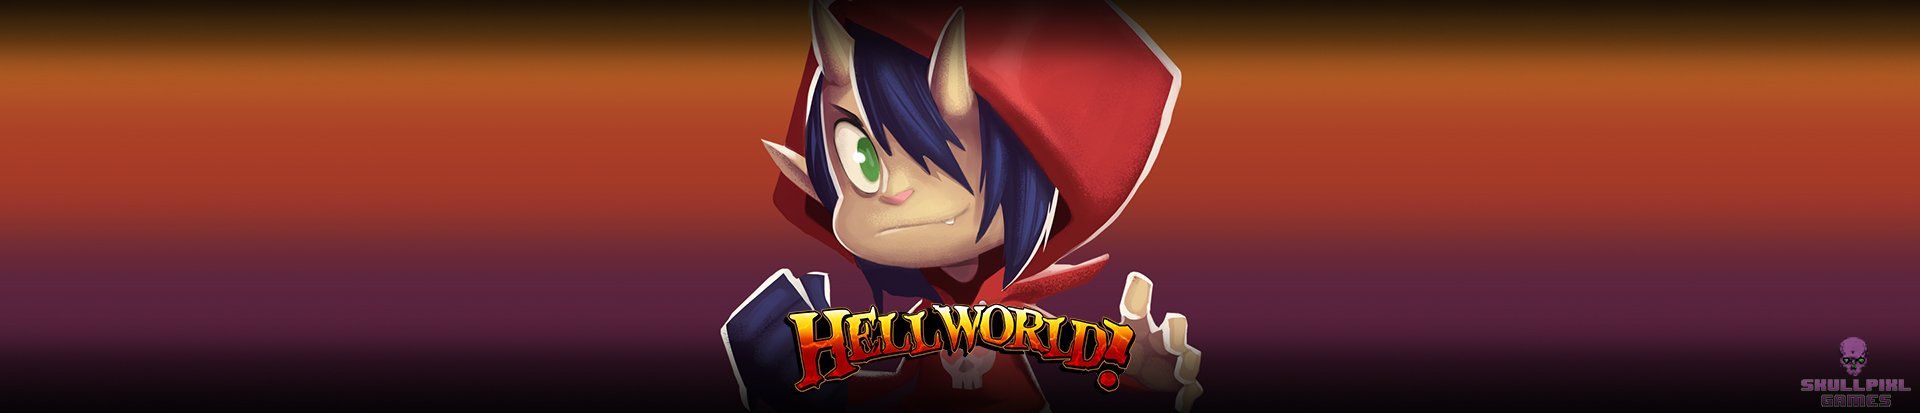 Hellworld!